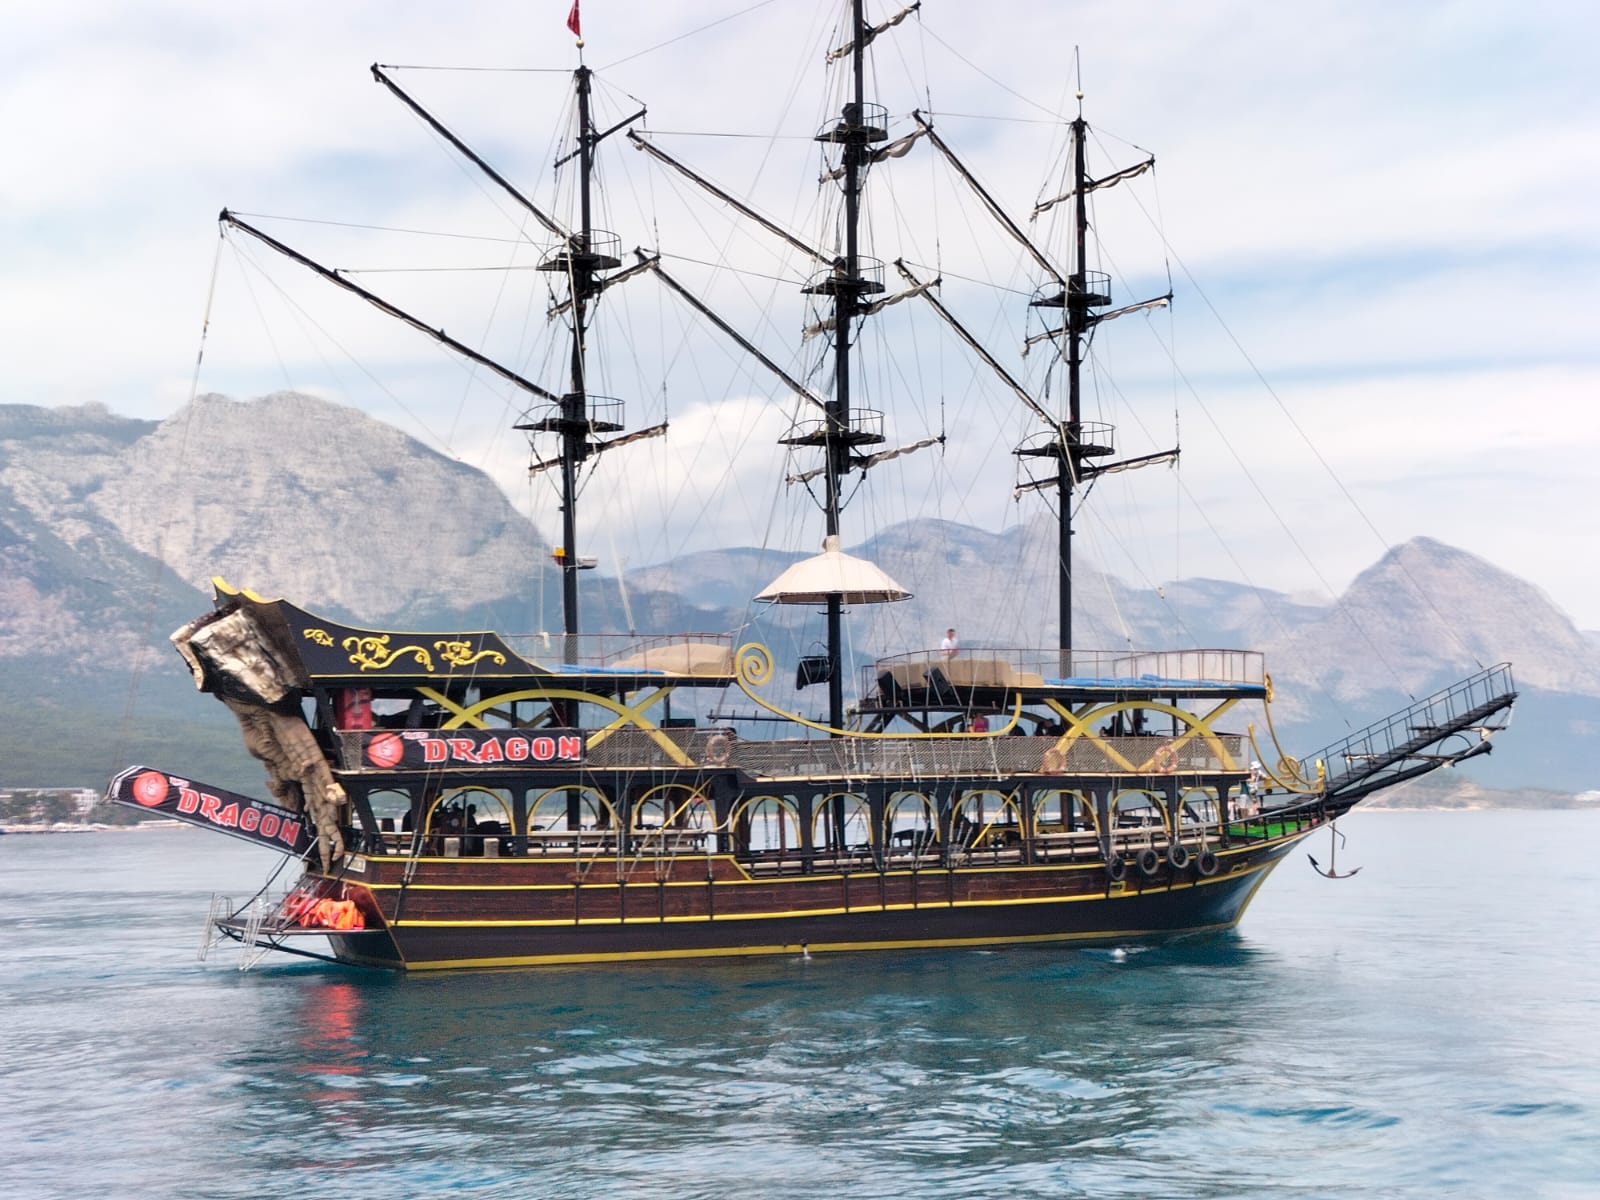 Прогулка на яхте в Кемере из Анталии (Пиратский корабль)